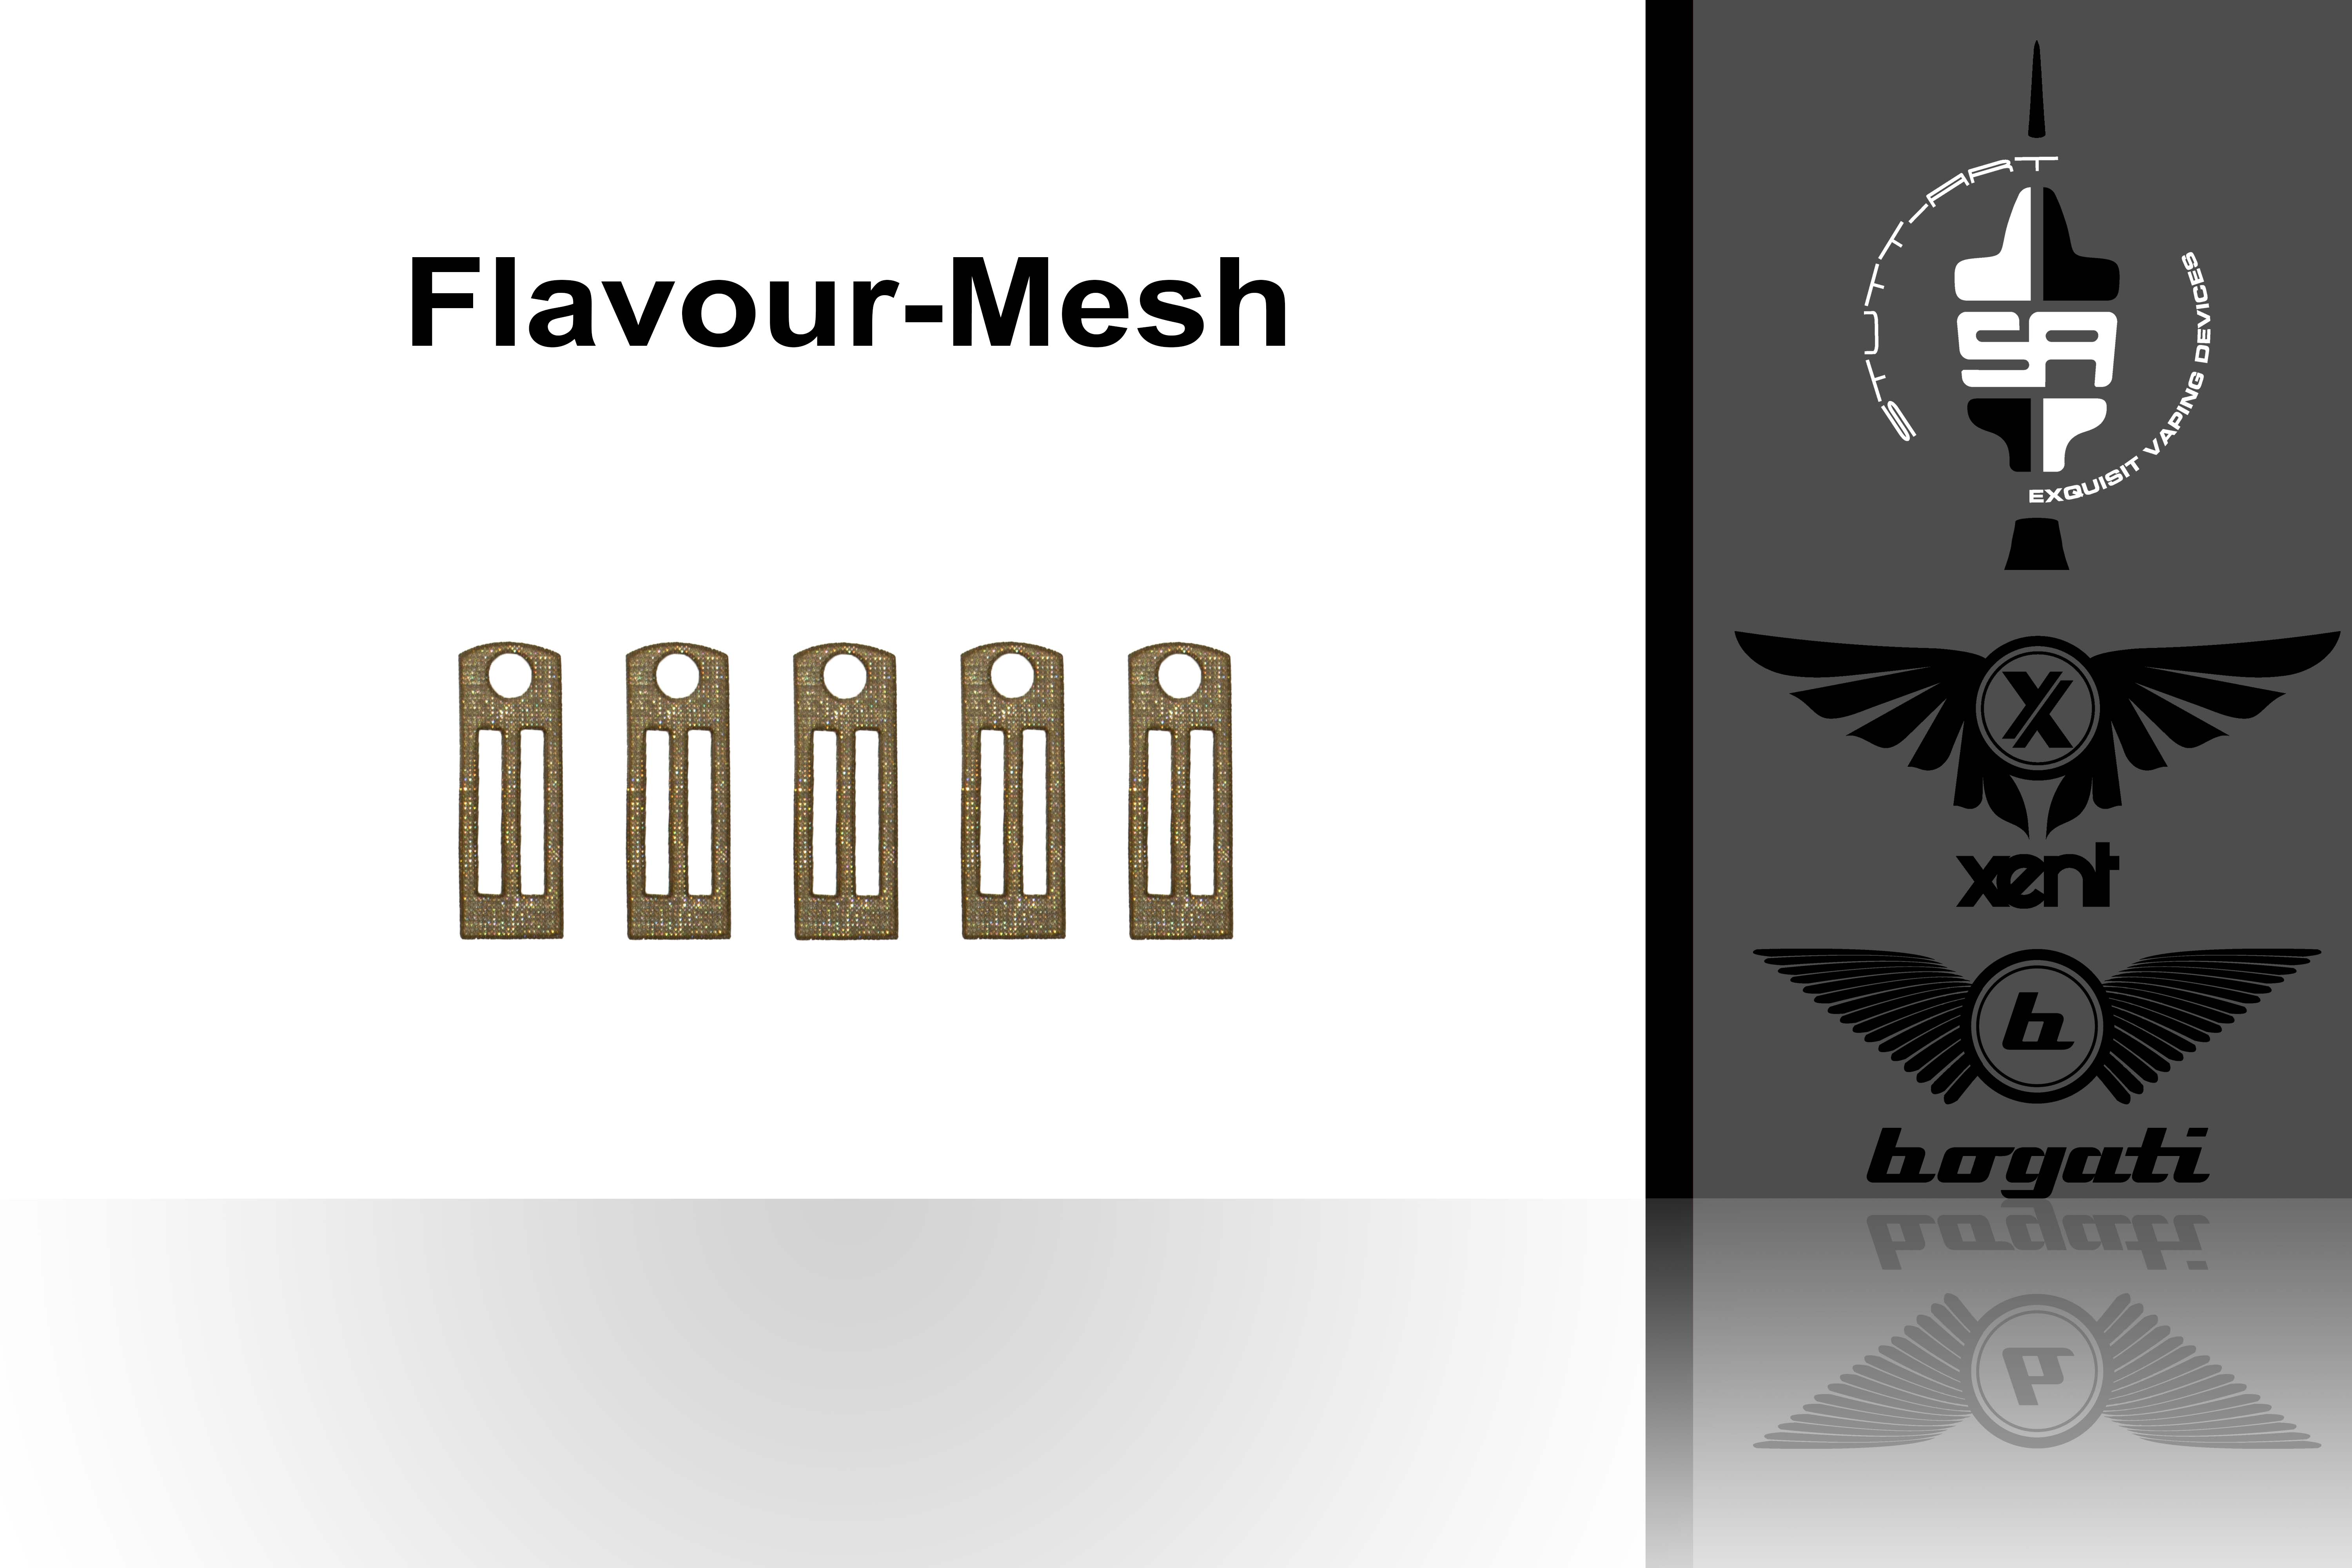 Bogati & Xent Flavour-Mesh